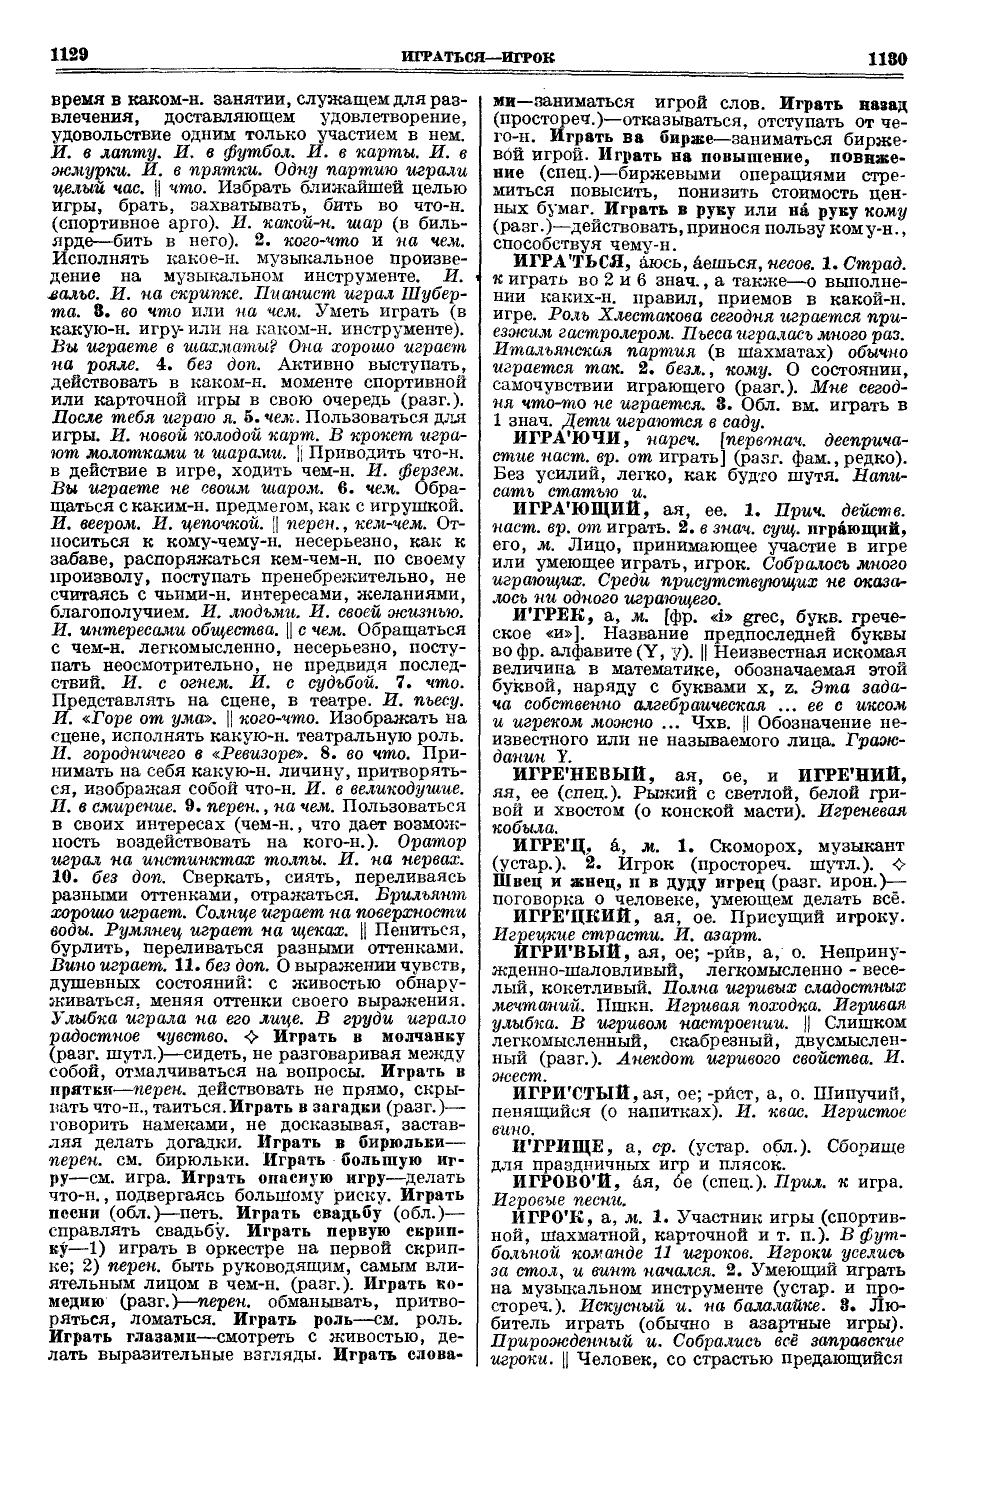 Фотокопия pdf / скан страницы 603 толкового словаря Ушакова (том 1)